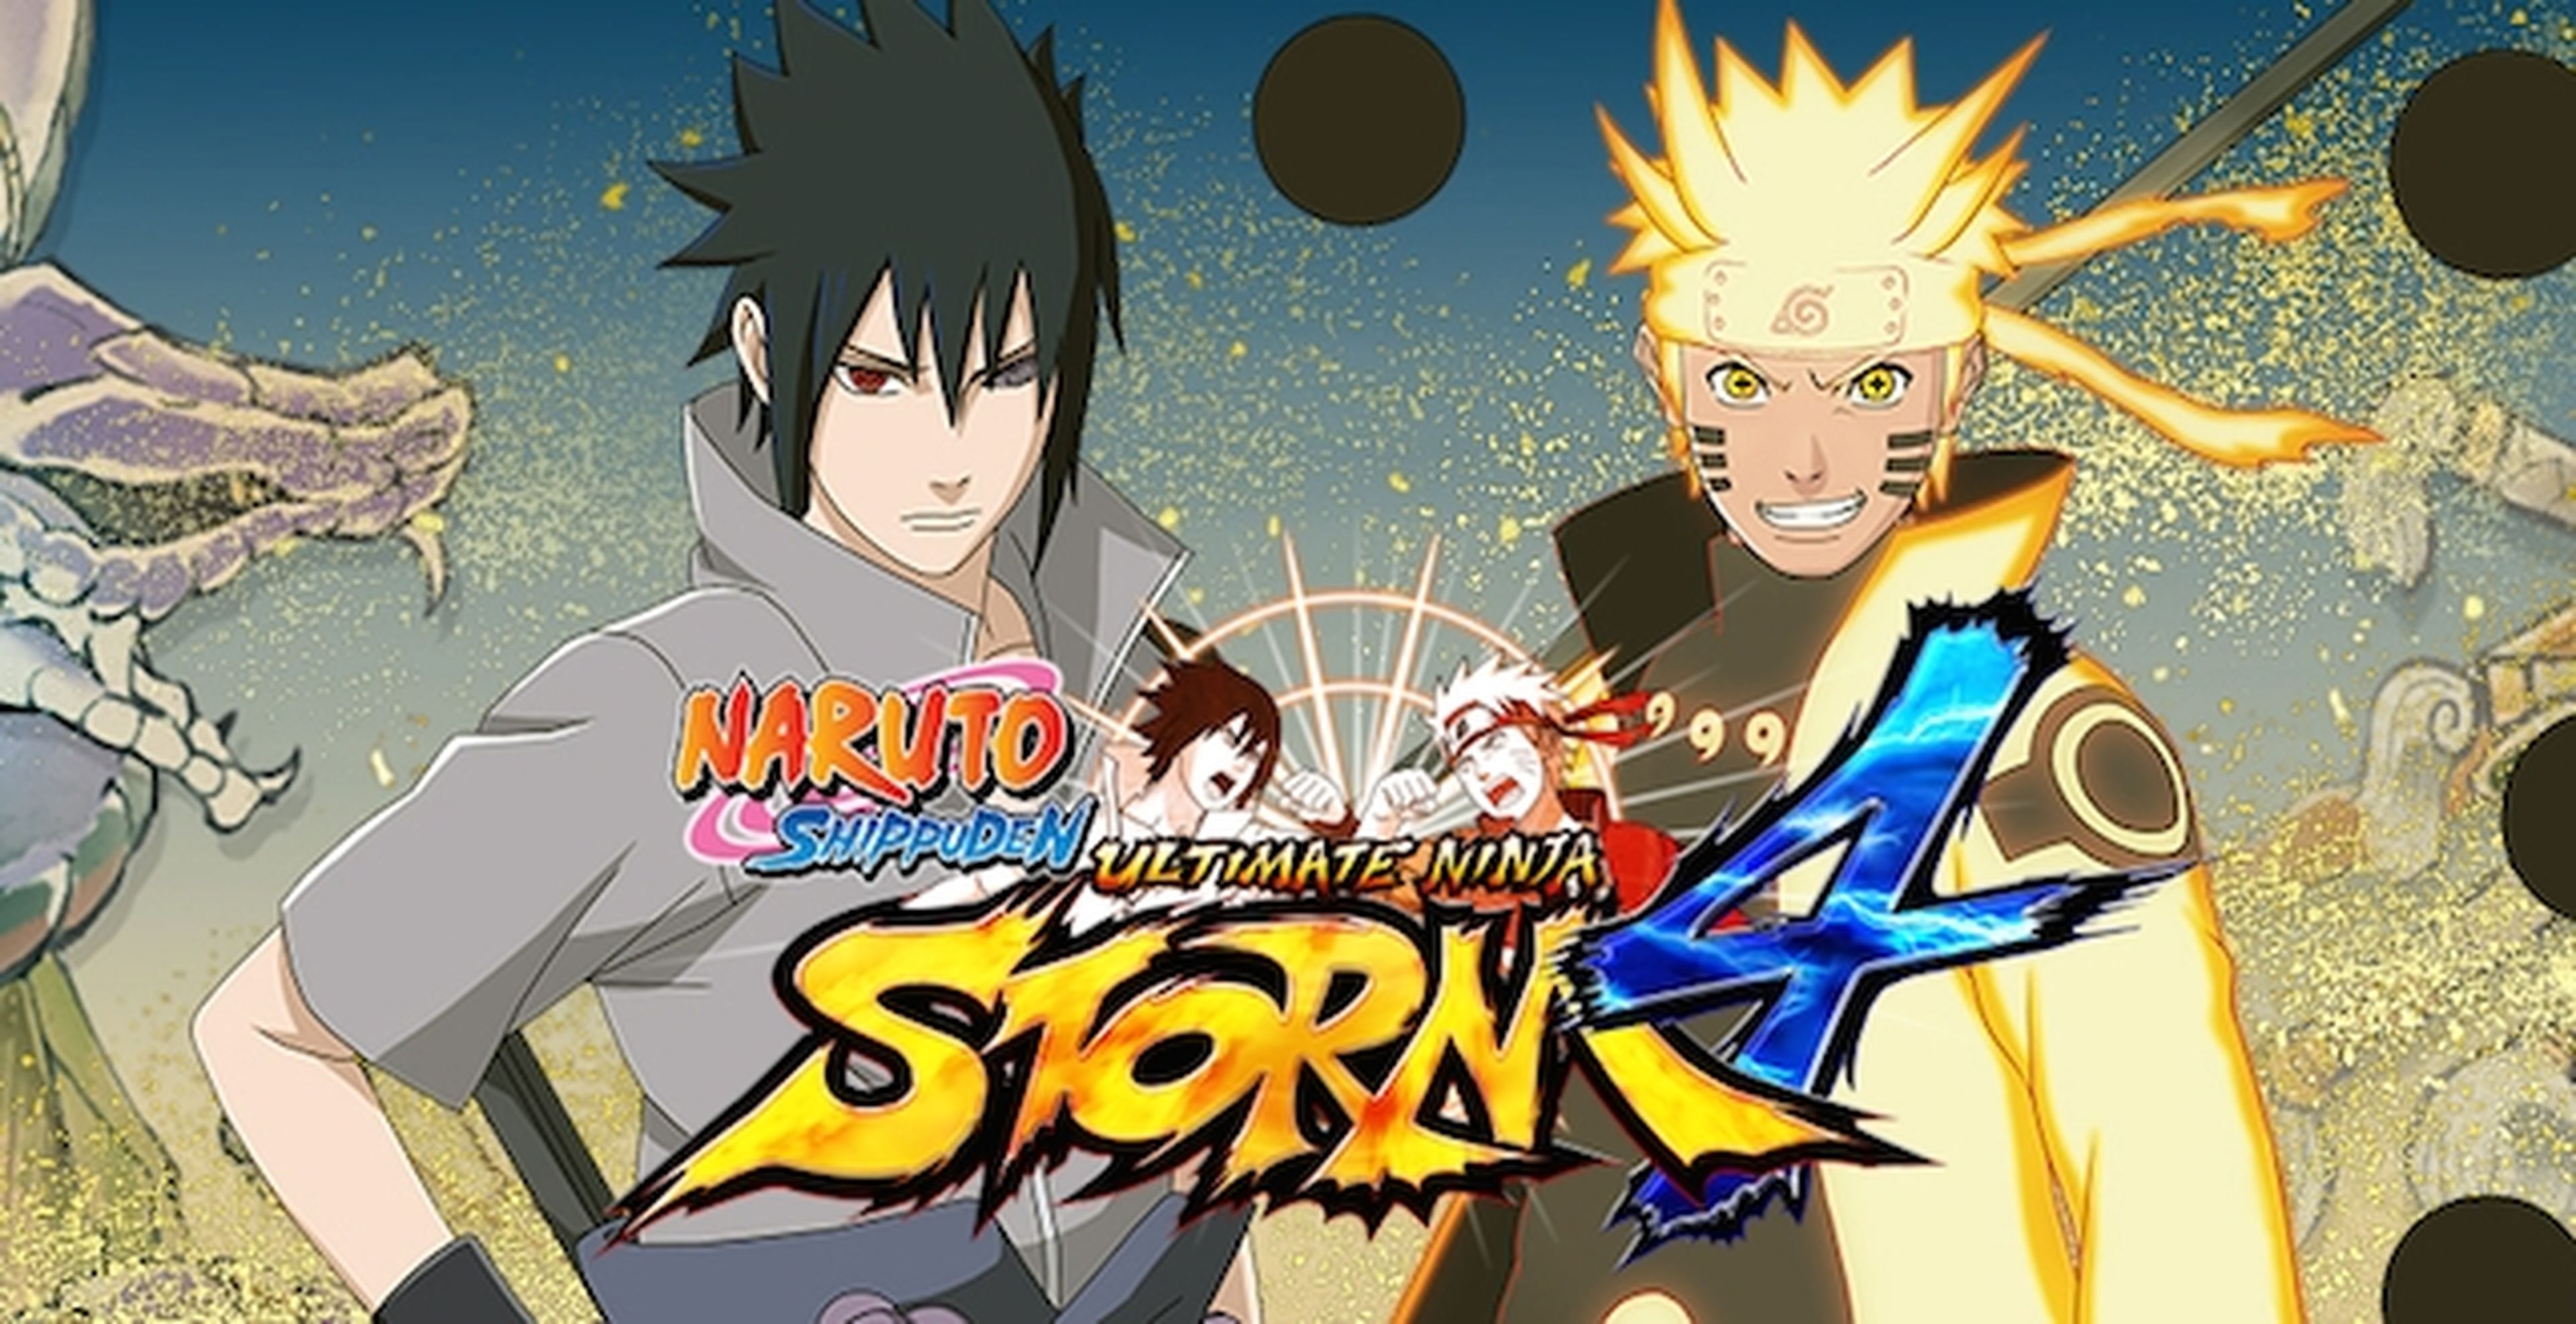 Naruto Shippuden Ultimate Ninja Storm 4 - Cómo completar todos los capítulos con Rango S